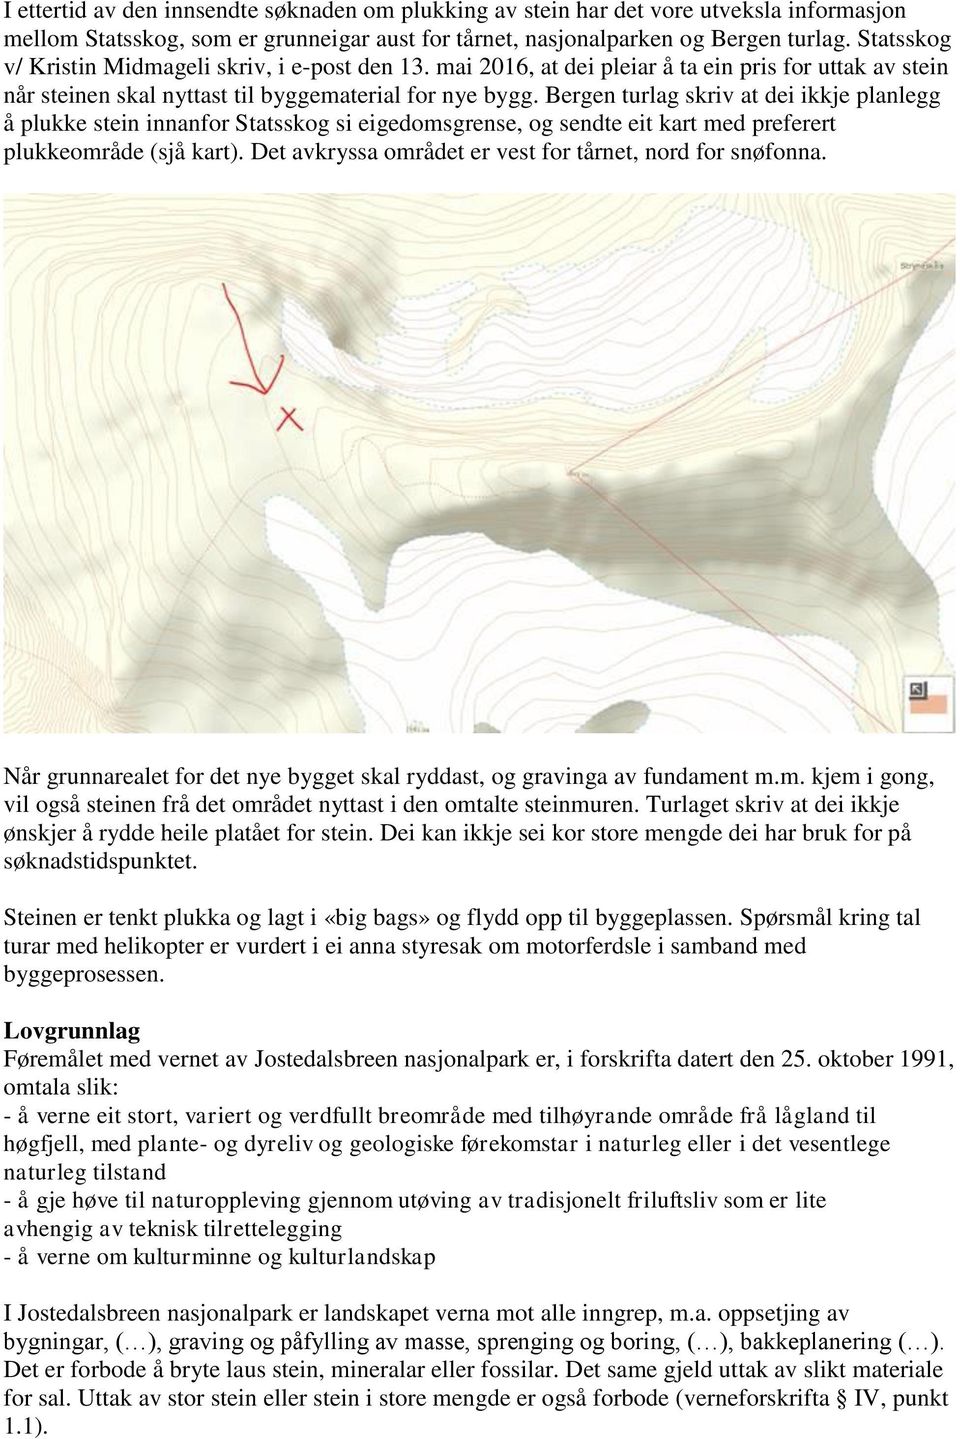 Bergen turlag skriv at dei ikkje planlegg å plukke stein innanfor Statsskog si eigedomsgrense, og sendte eit kart med preferert plukkeområde (sjå kart).